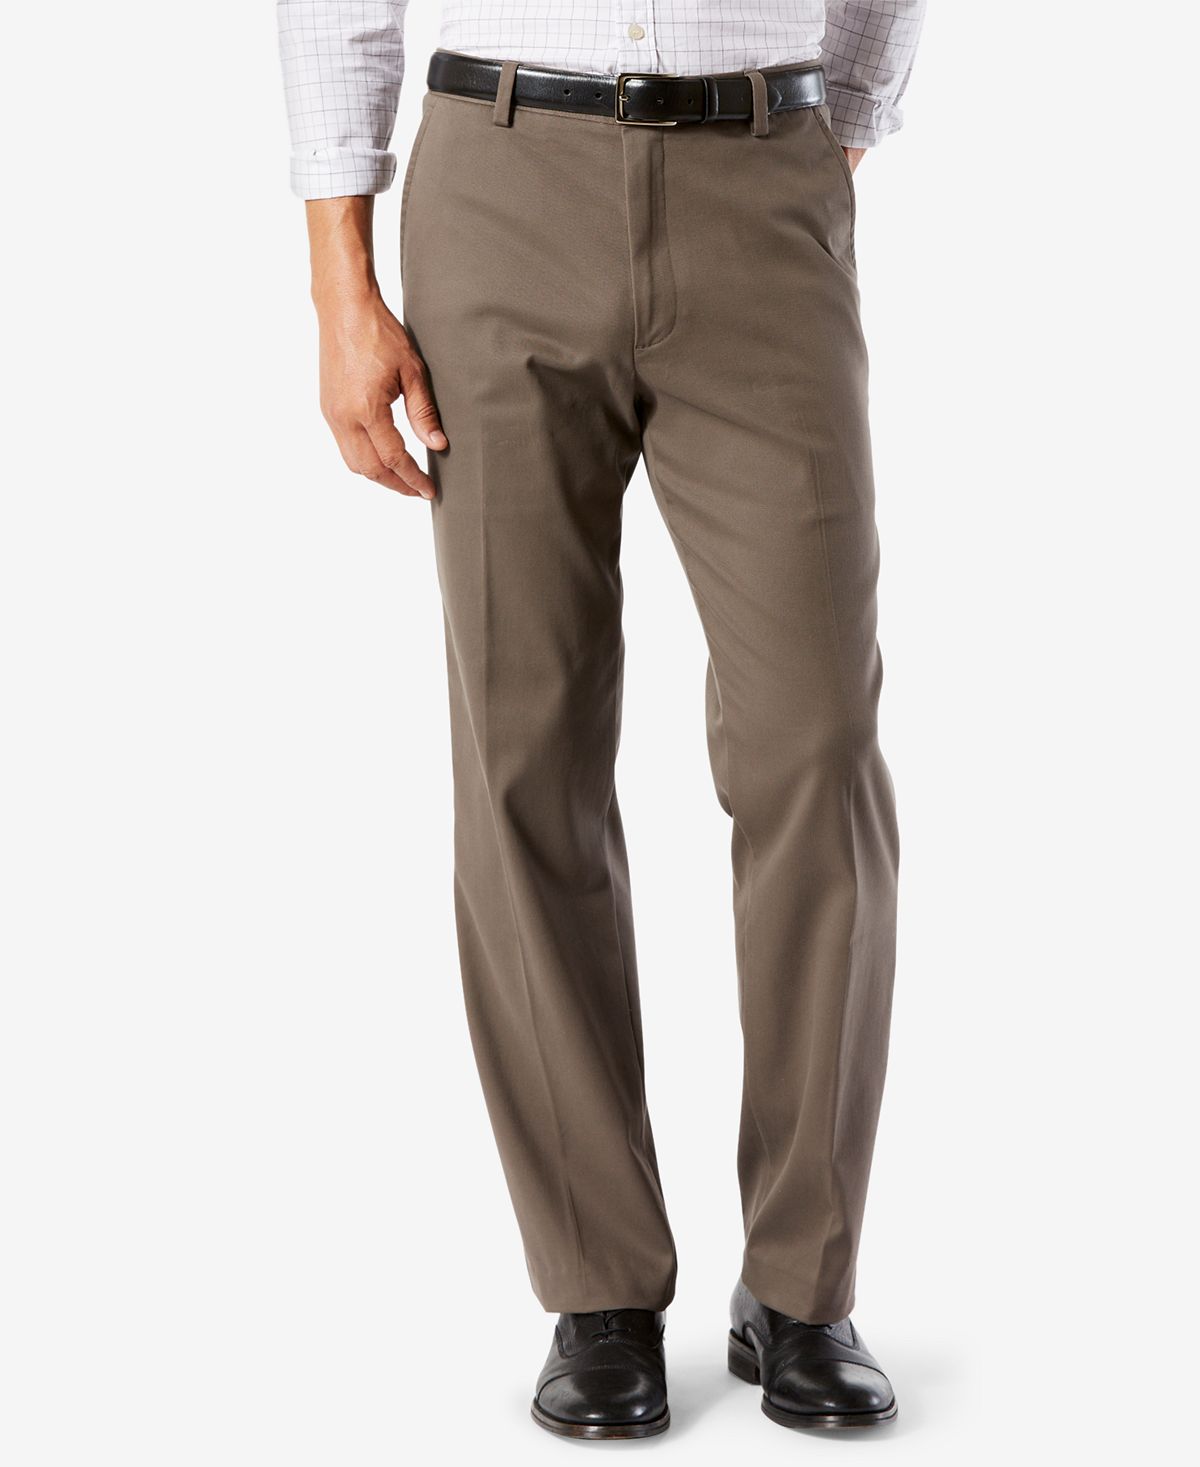 Мужские брюки easy classic fit цвета хаки стрейч Dockers, мульти